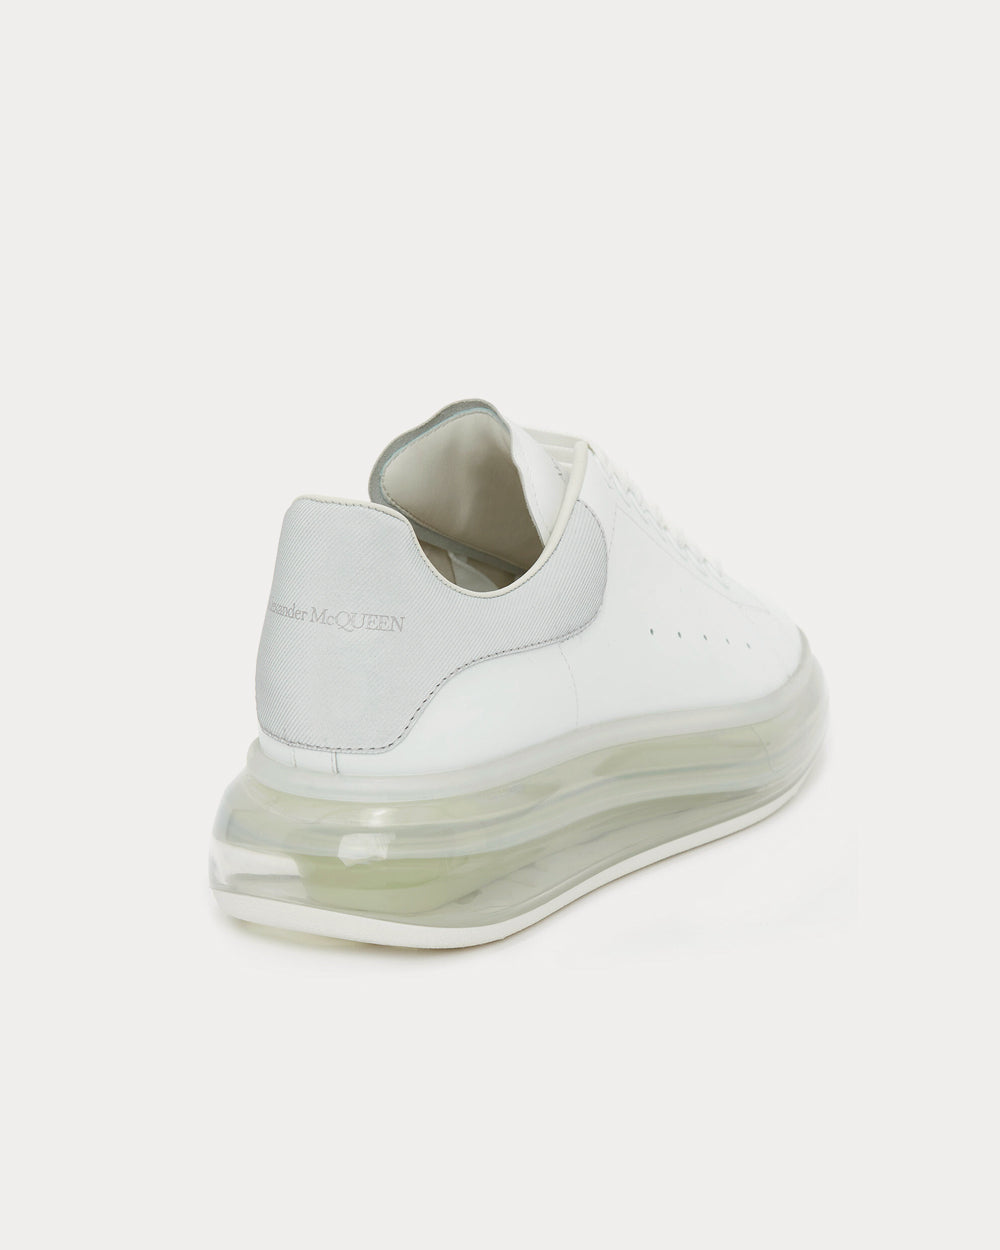 Alexander McQueen - Oversized White Low Top Sneakers